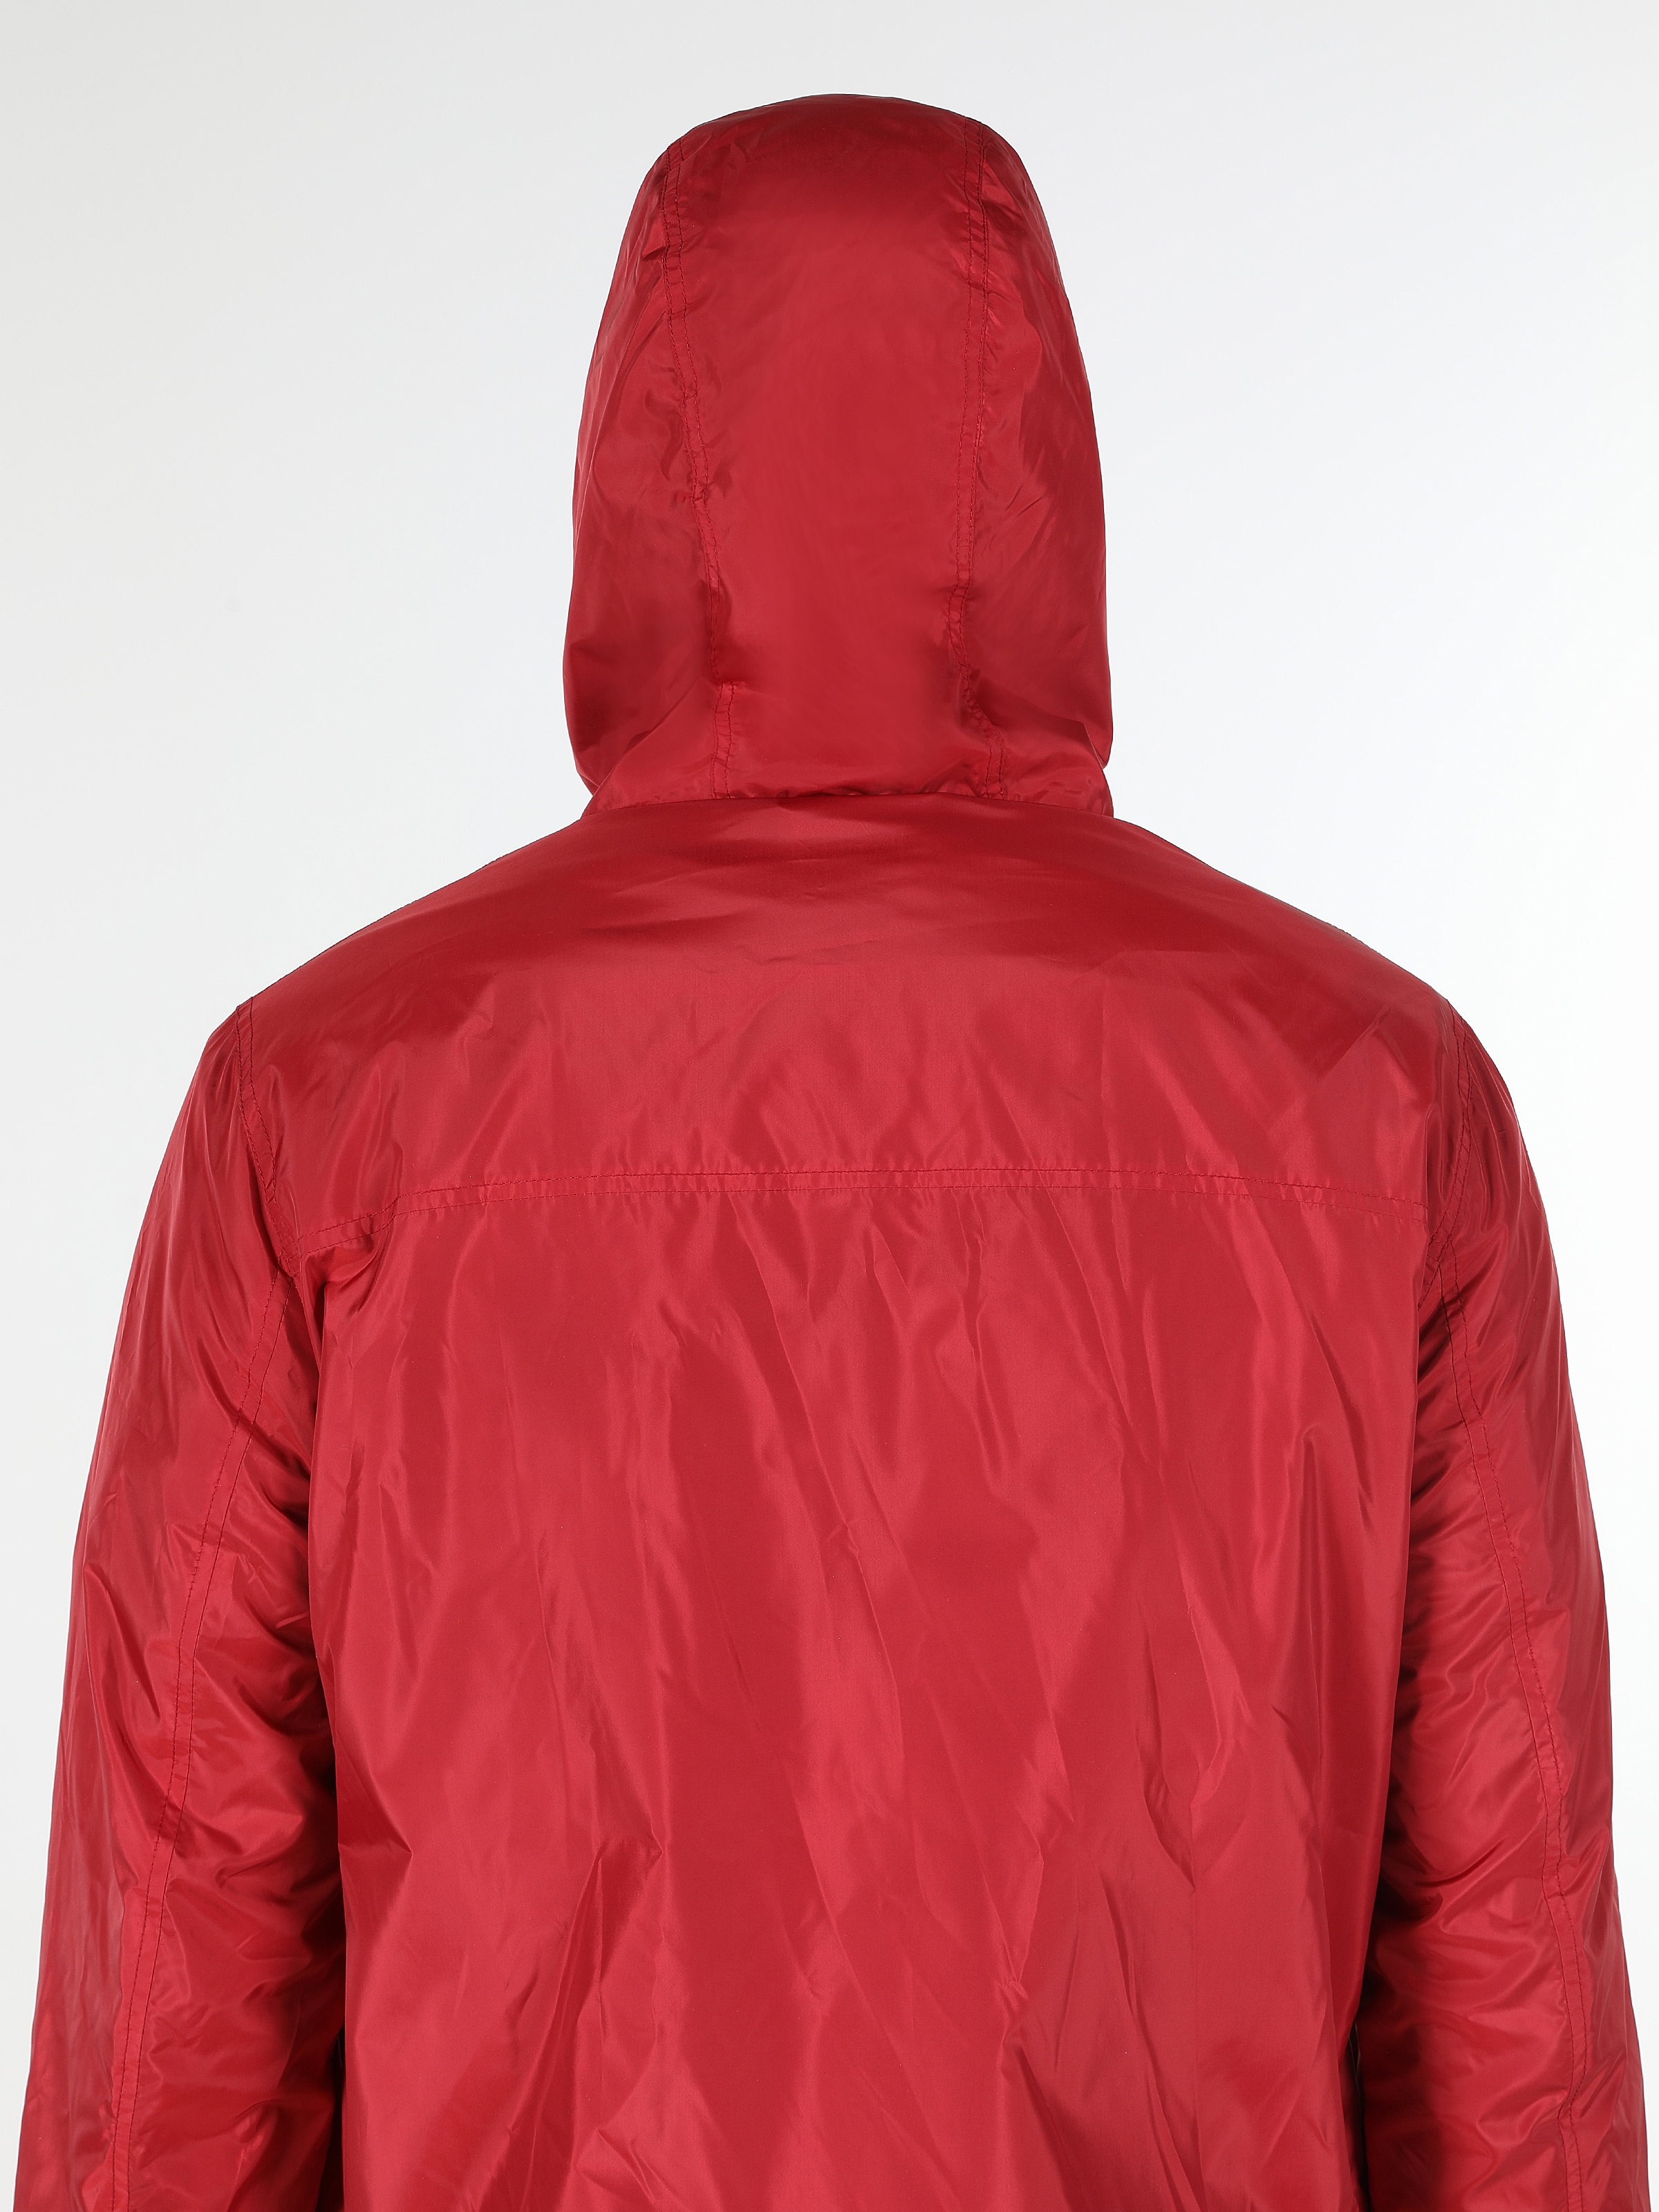 Afficher les détails de Manteau Homme Rouge À Capuche Regular Fit Avec Poches